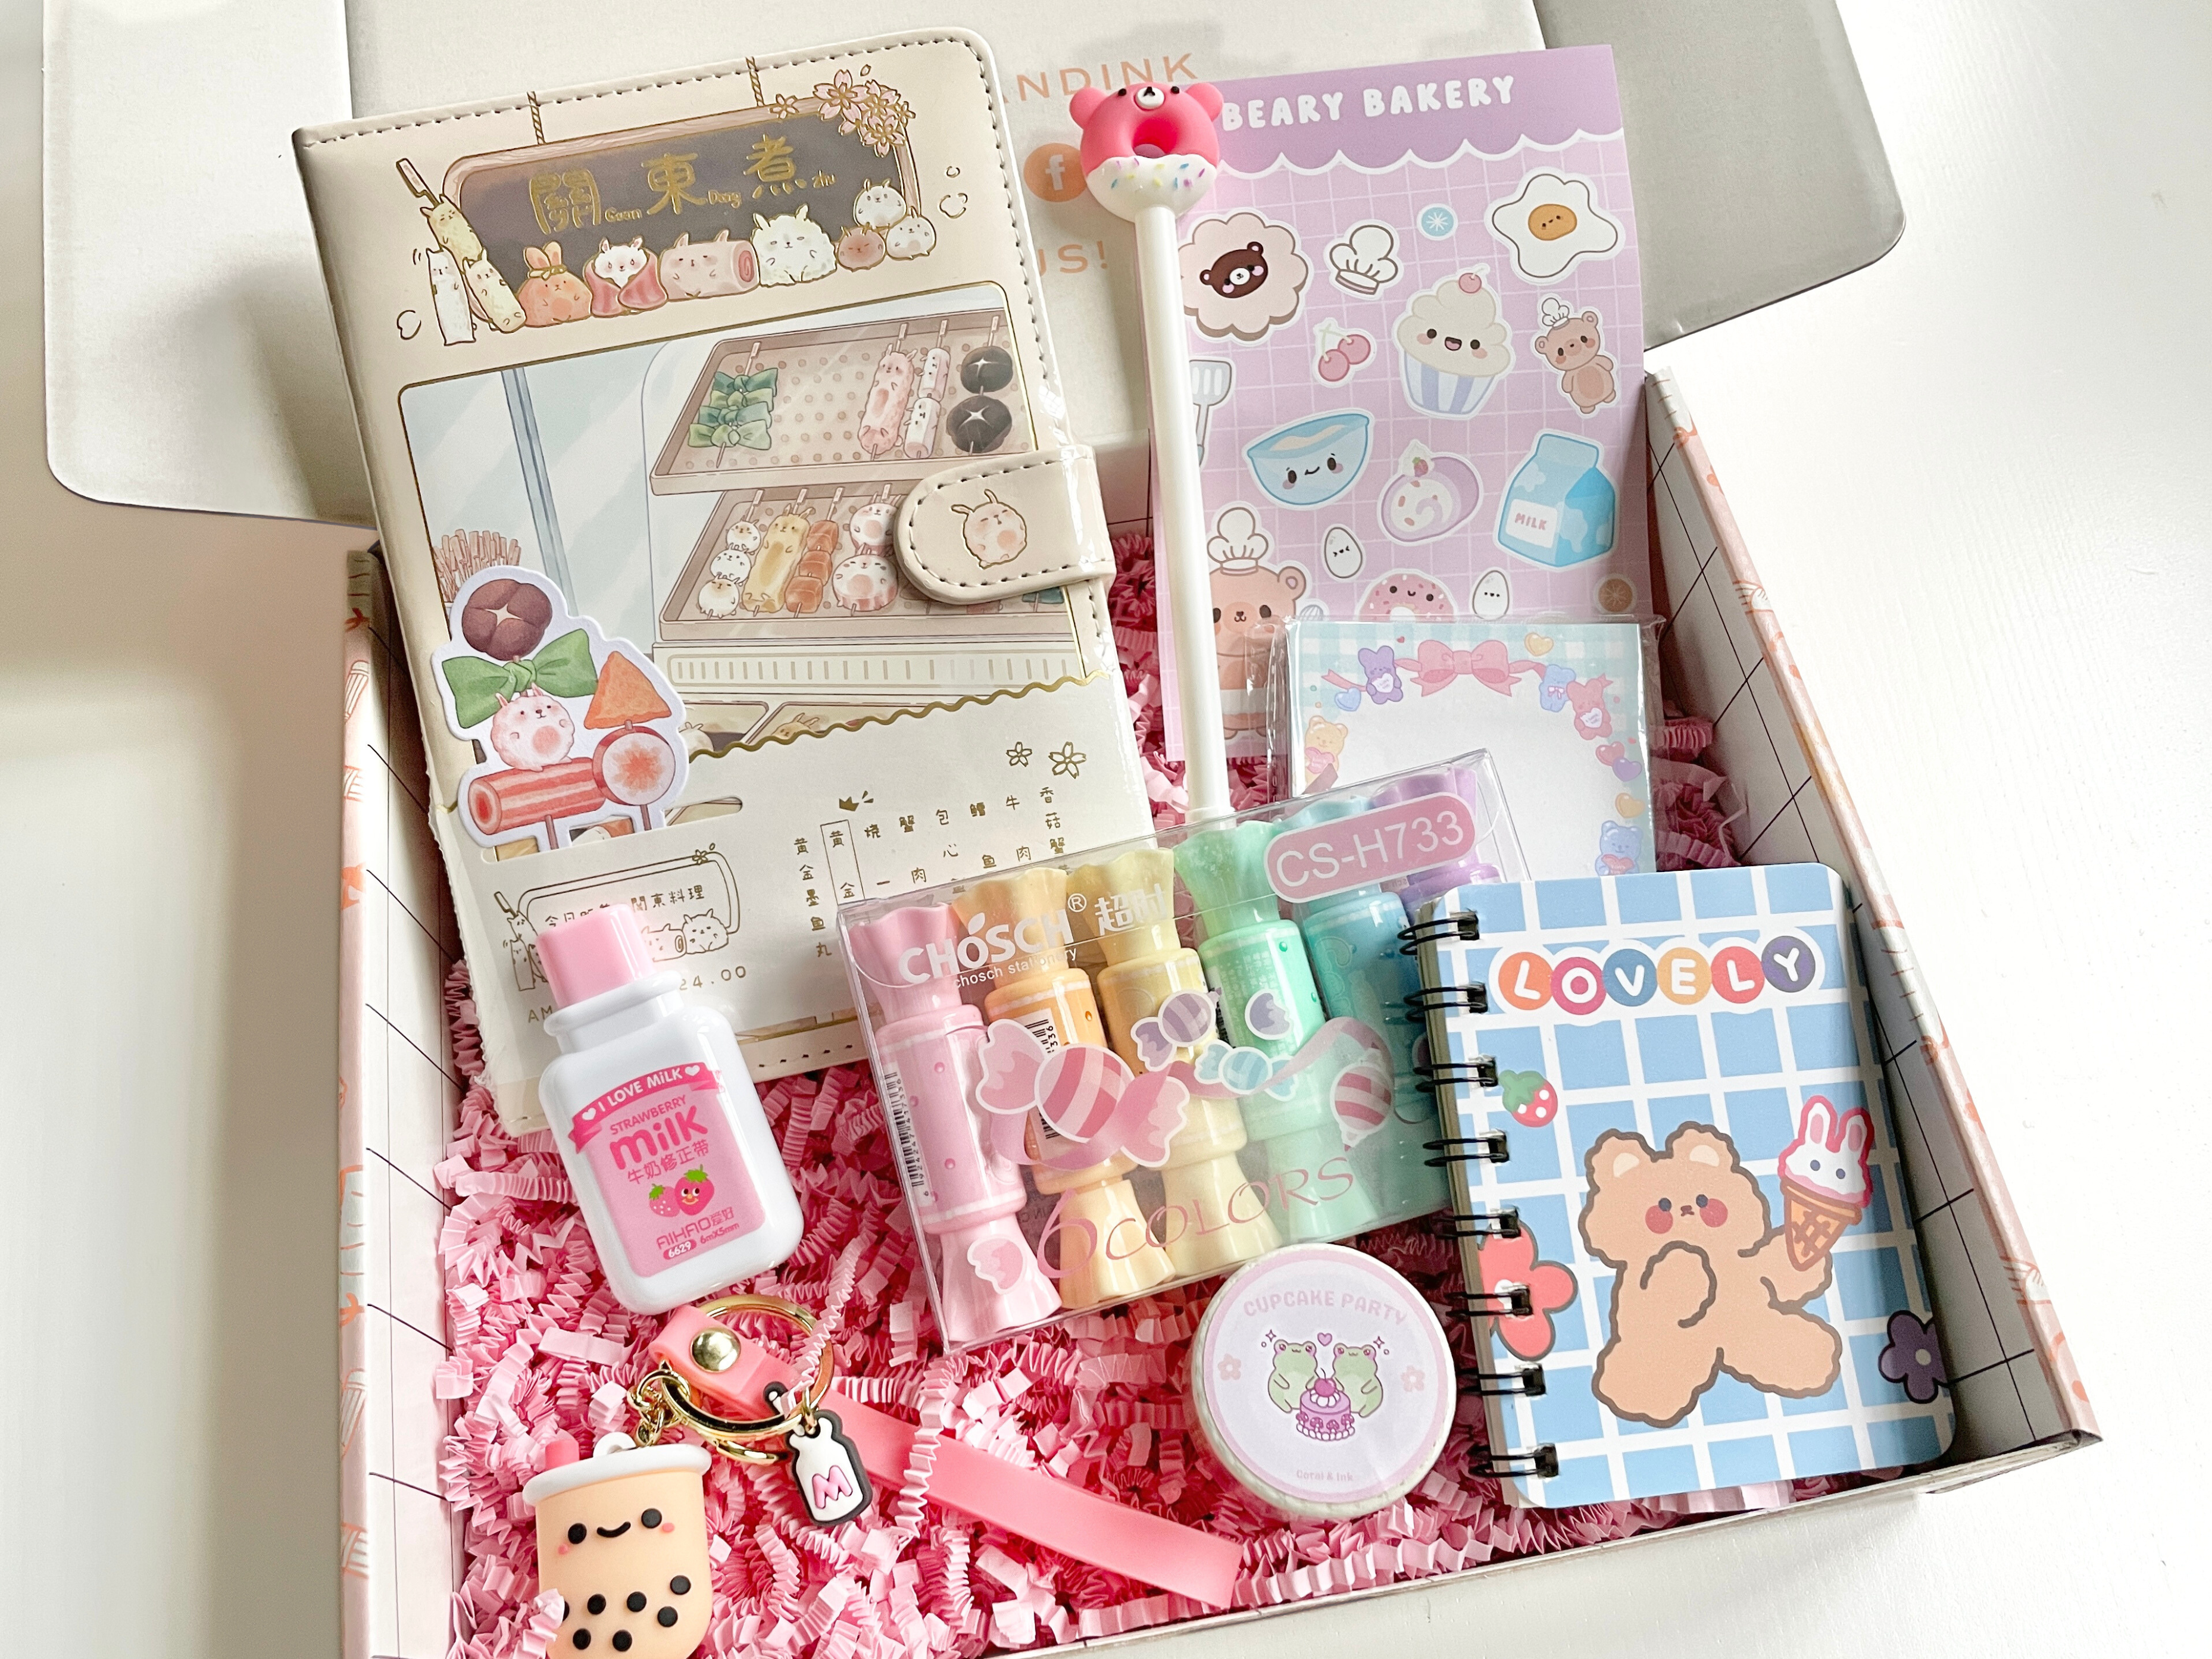 Kawaii Stationery Set Craft Box Gift Set Kawaii Stationery cute Kawaii  Surprise Bag kids Birthday Gift Stationery Gift Set 